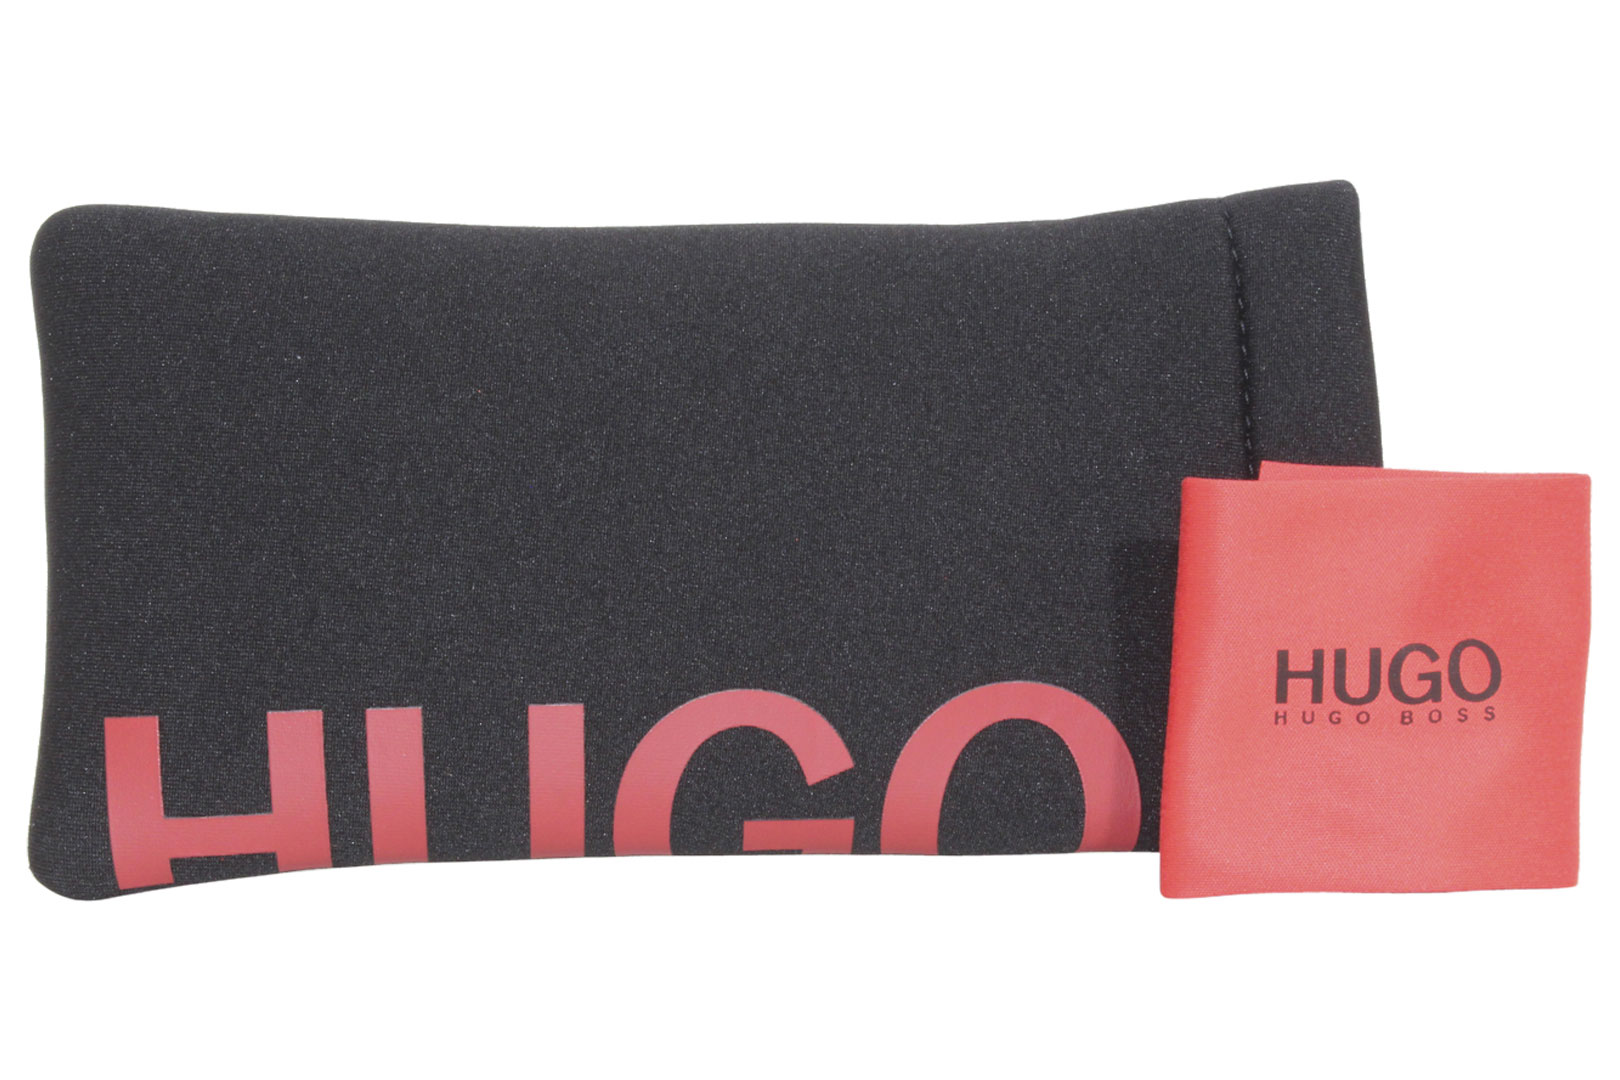 Hugo Boss HG-1025 003 Eyeglasses Men's Matte Black Full Rim Square ...